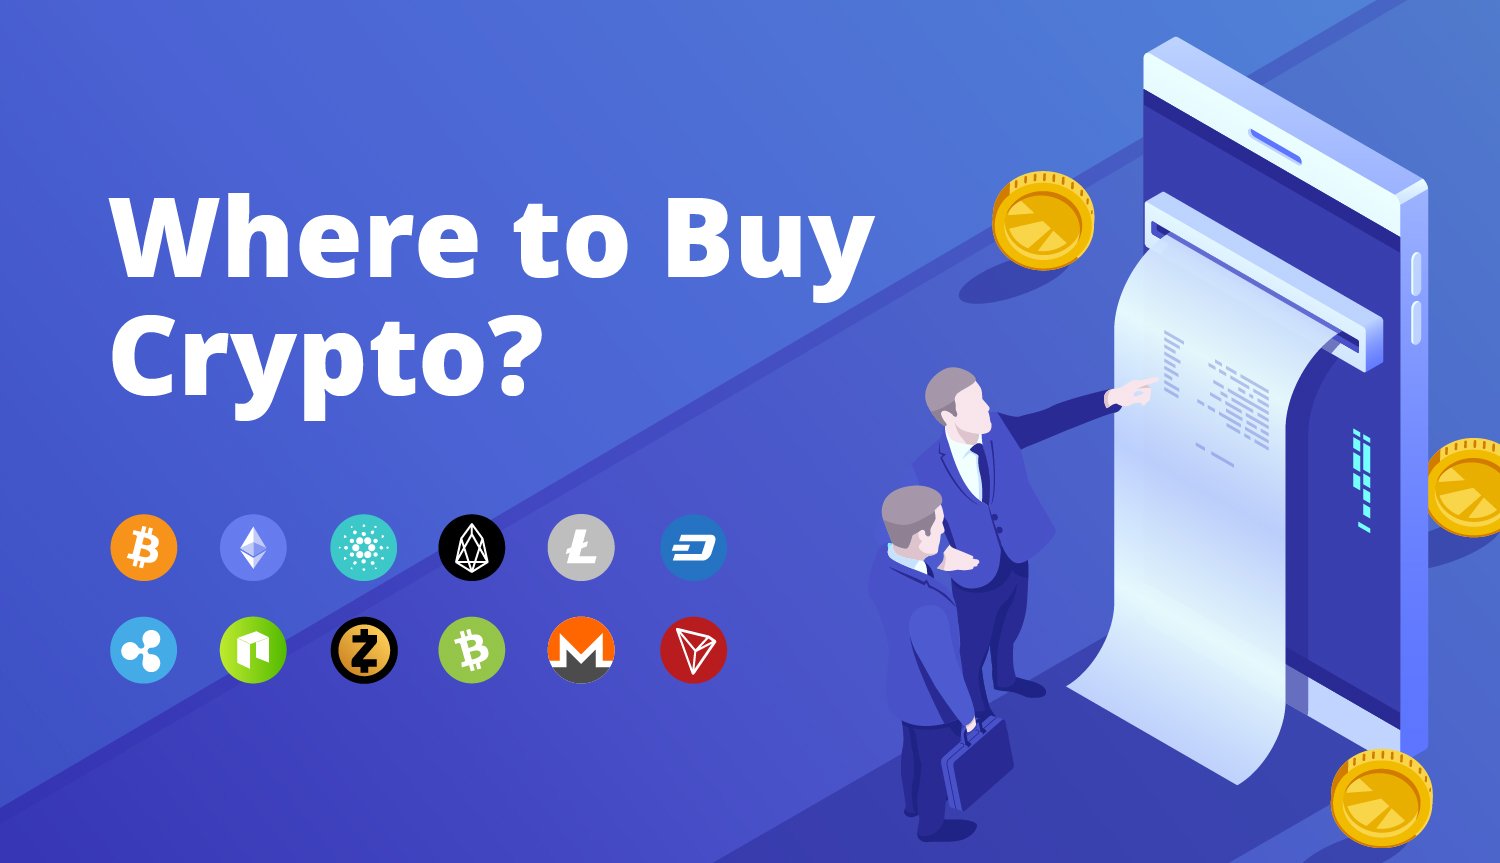 i want to buy crypto